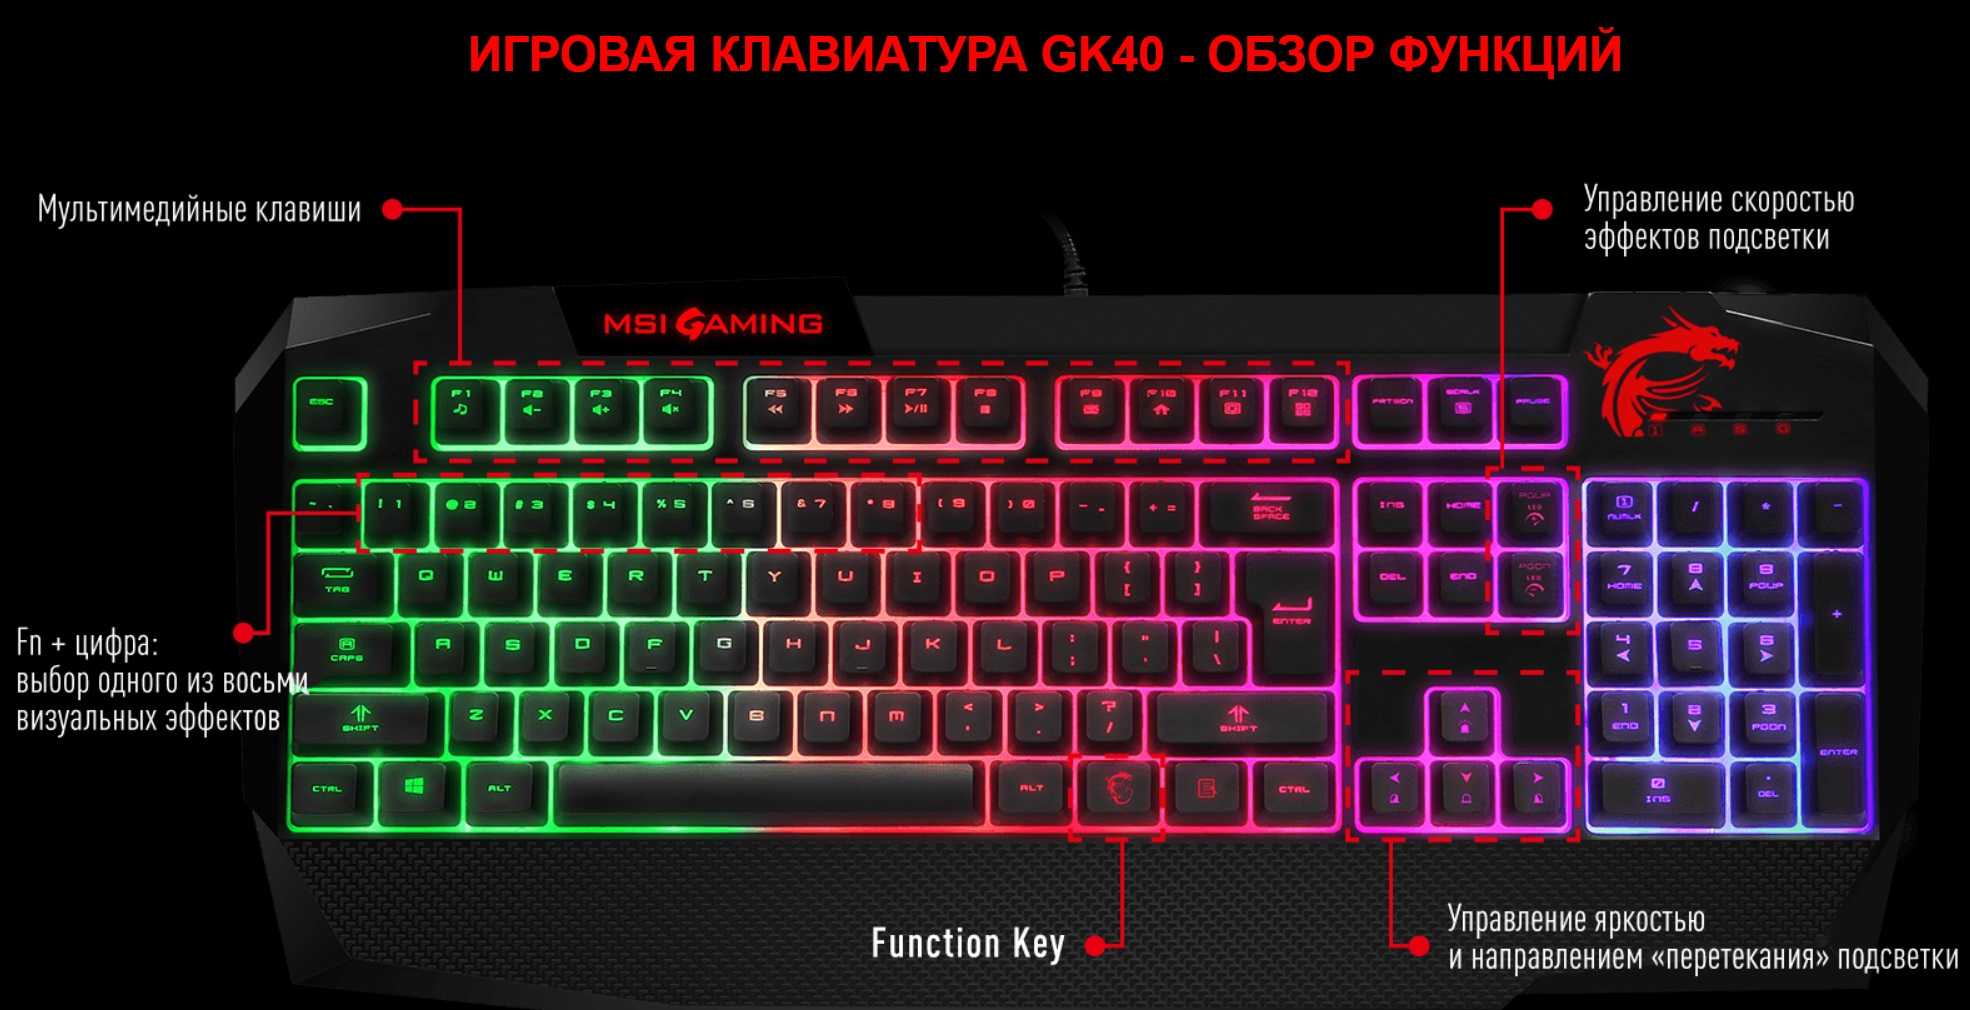 Ardor gaming af24h1 купить. Комбинация для подсветки клавиатуры. Комбинация кнопок на клавиатуре для подсветки. Клавиатура с подсветкой при нажатия кнопки. Включение подсветки на клавиатуре.